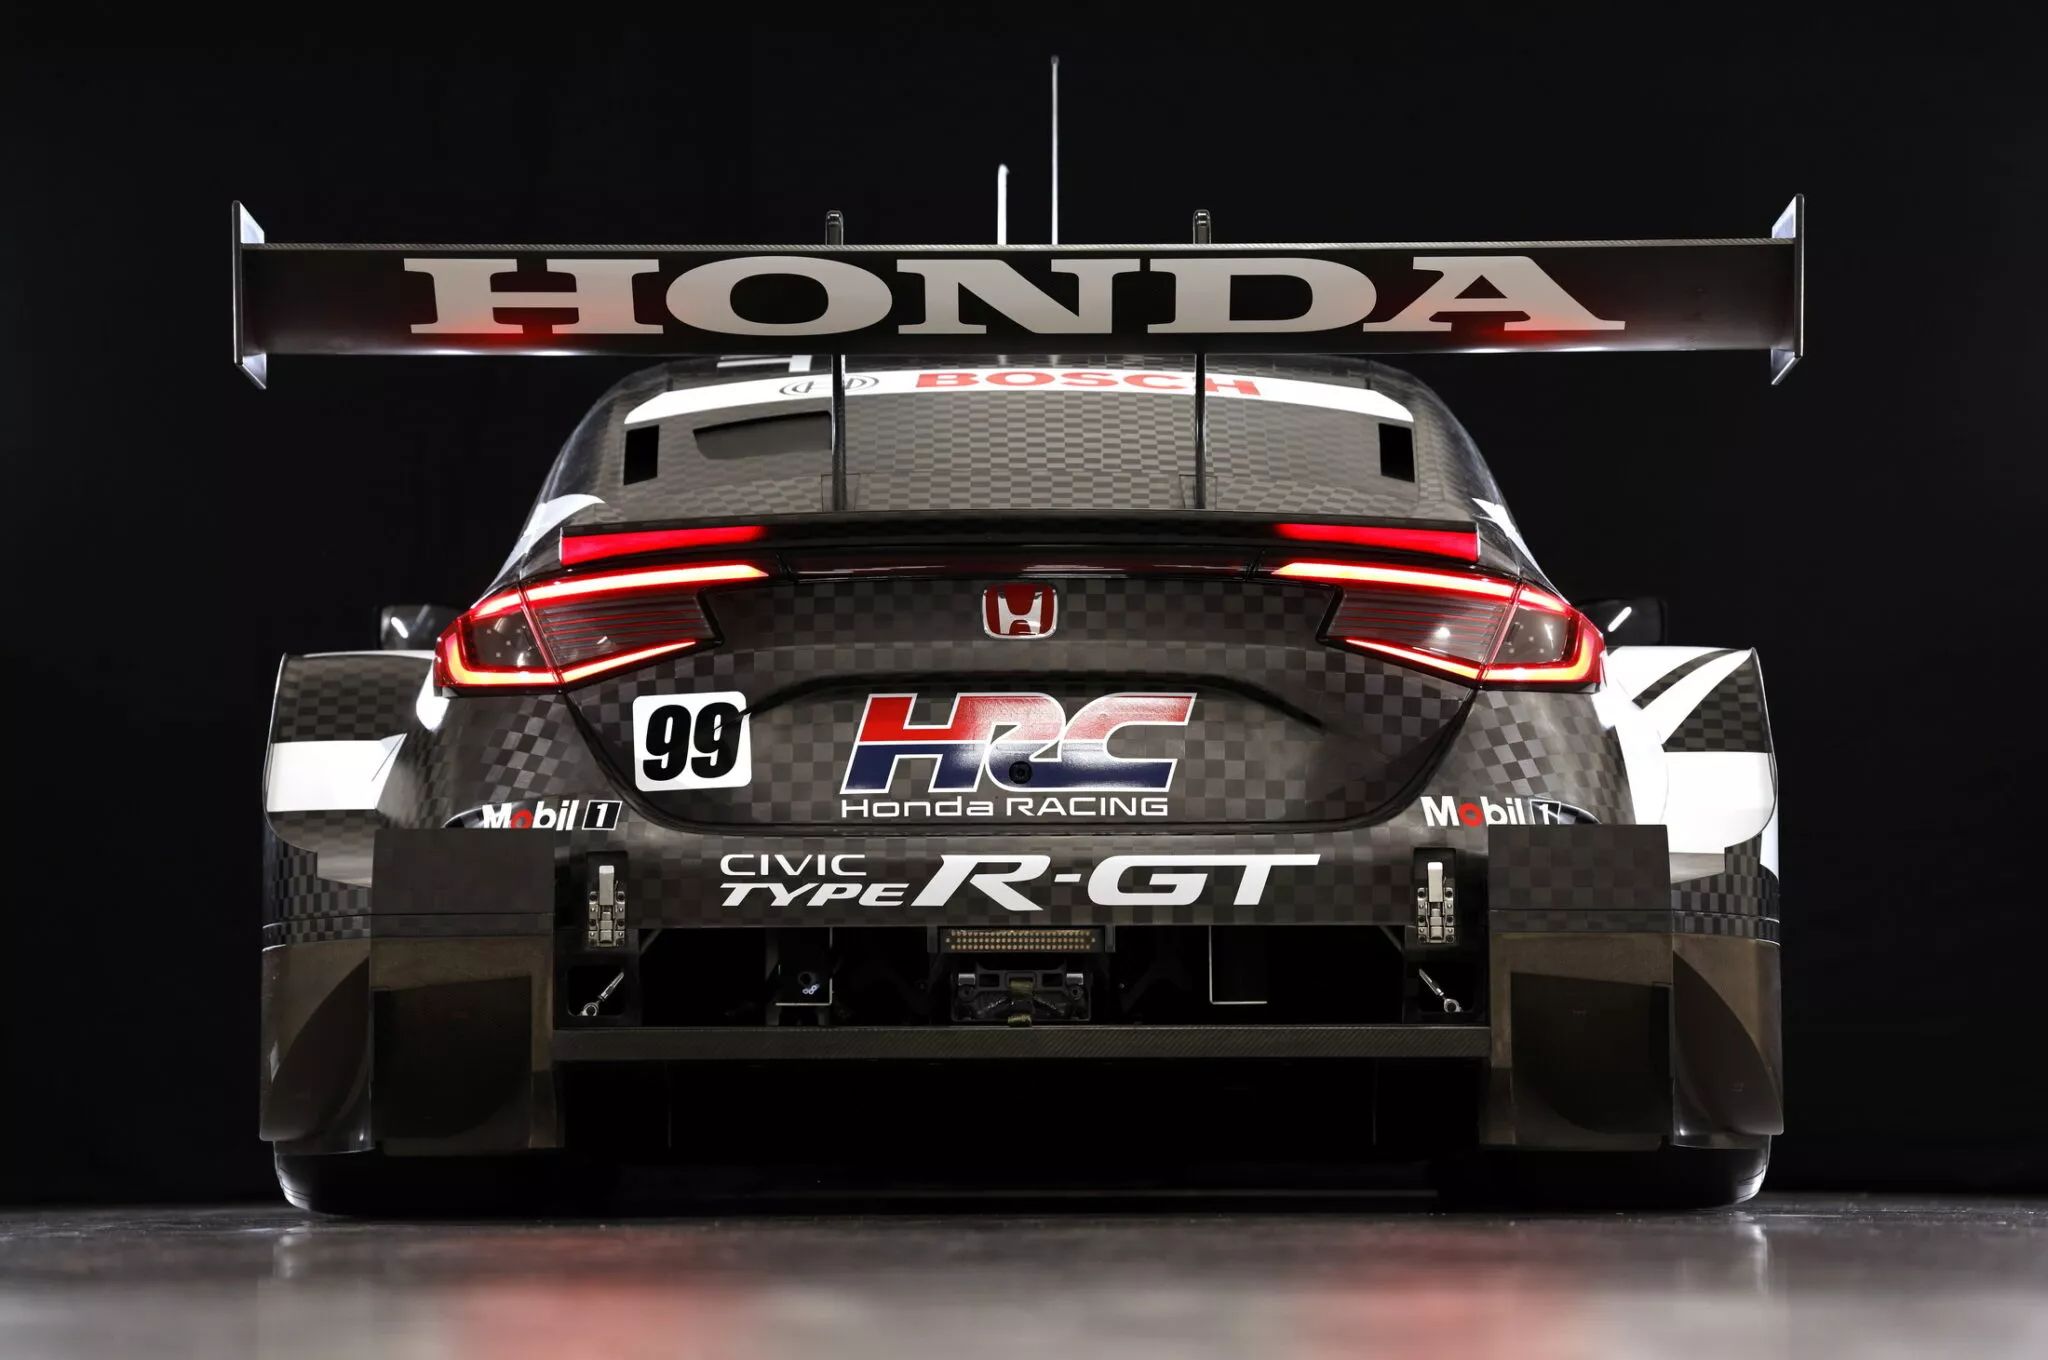 هوندا سيفيك تايب ار GT الجديدة المخصصة للحلبات تظهر بالشكل النهائي قبل مشاركتها في السباقات 1